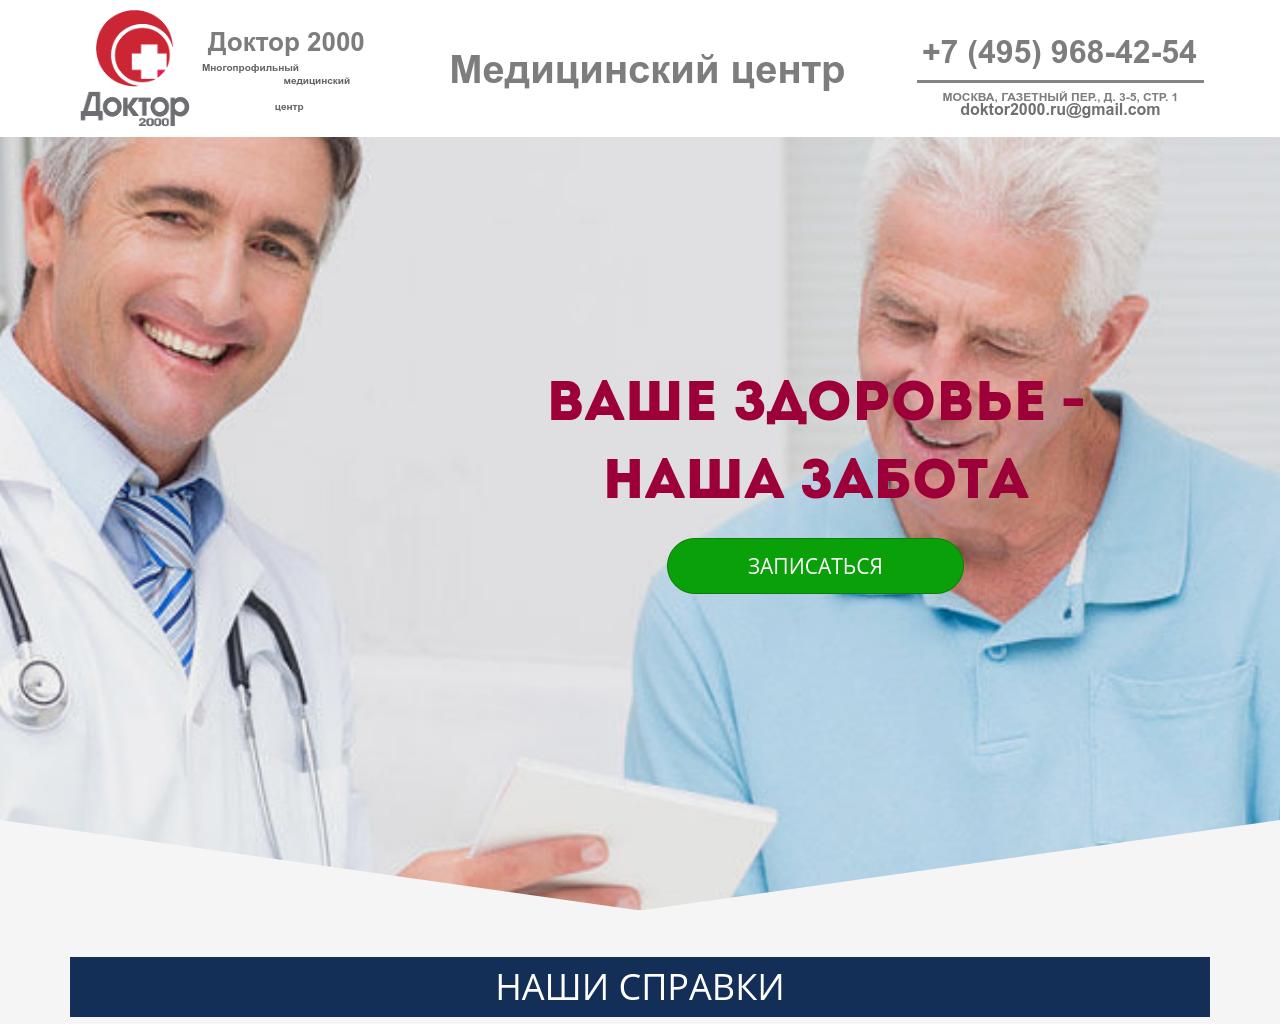 Изображение сайта doktor2000.ru в разрешении 1280x1024